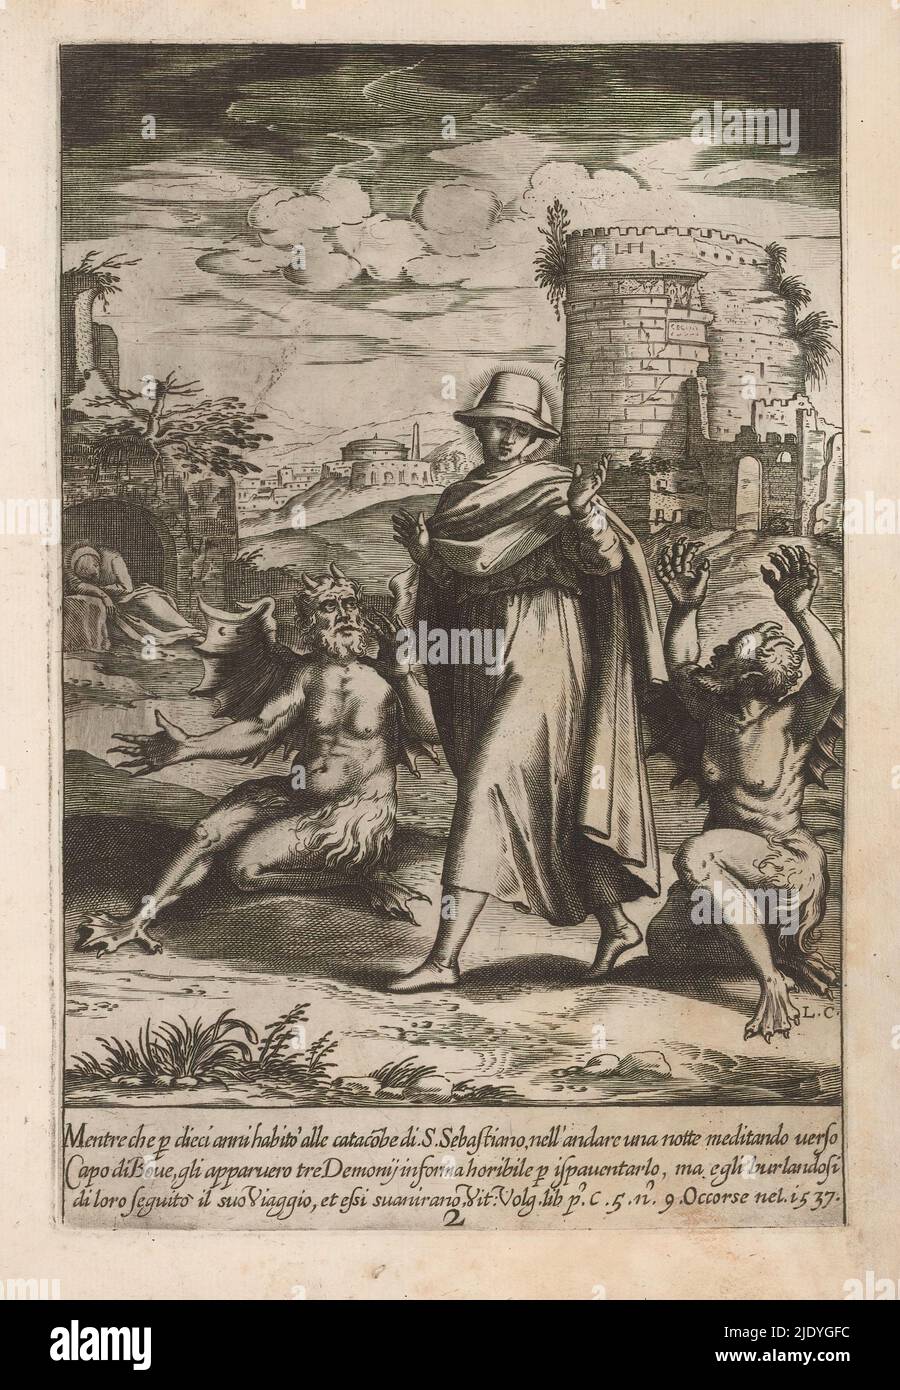 Filippo Neri cae de un burro y acompaña a San Germano a Roma, la vida de  San Filippo Neri (título de la serie), dos escenas de la infancia de  Filippo Neri. De